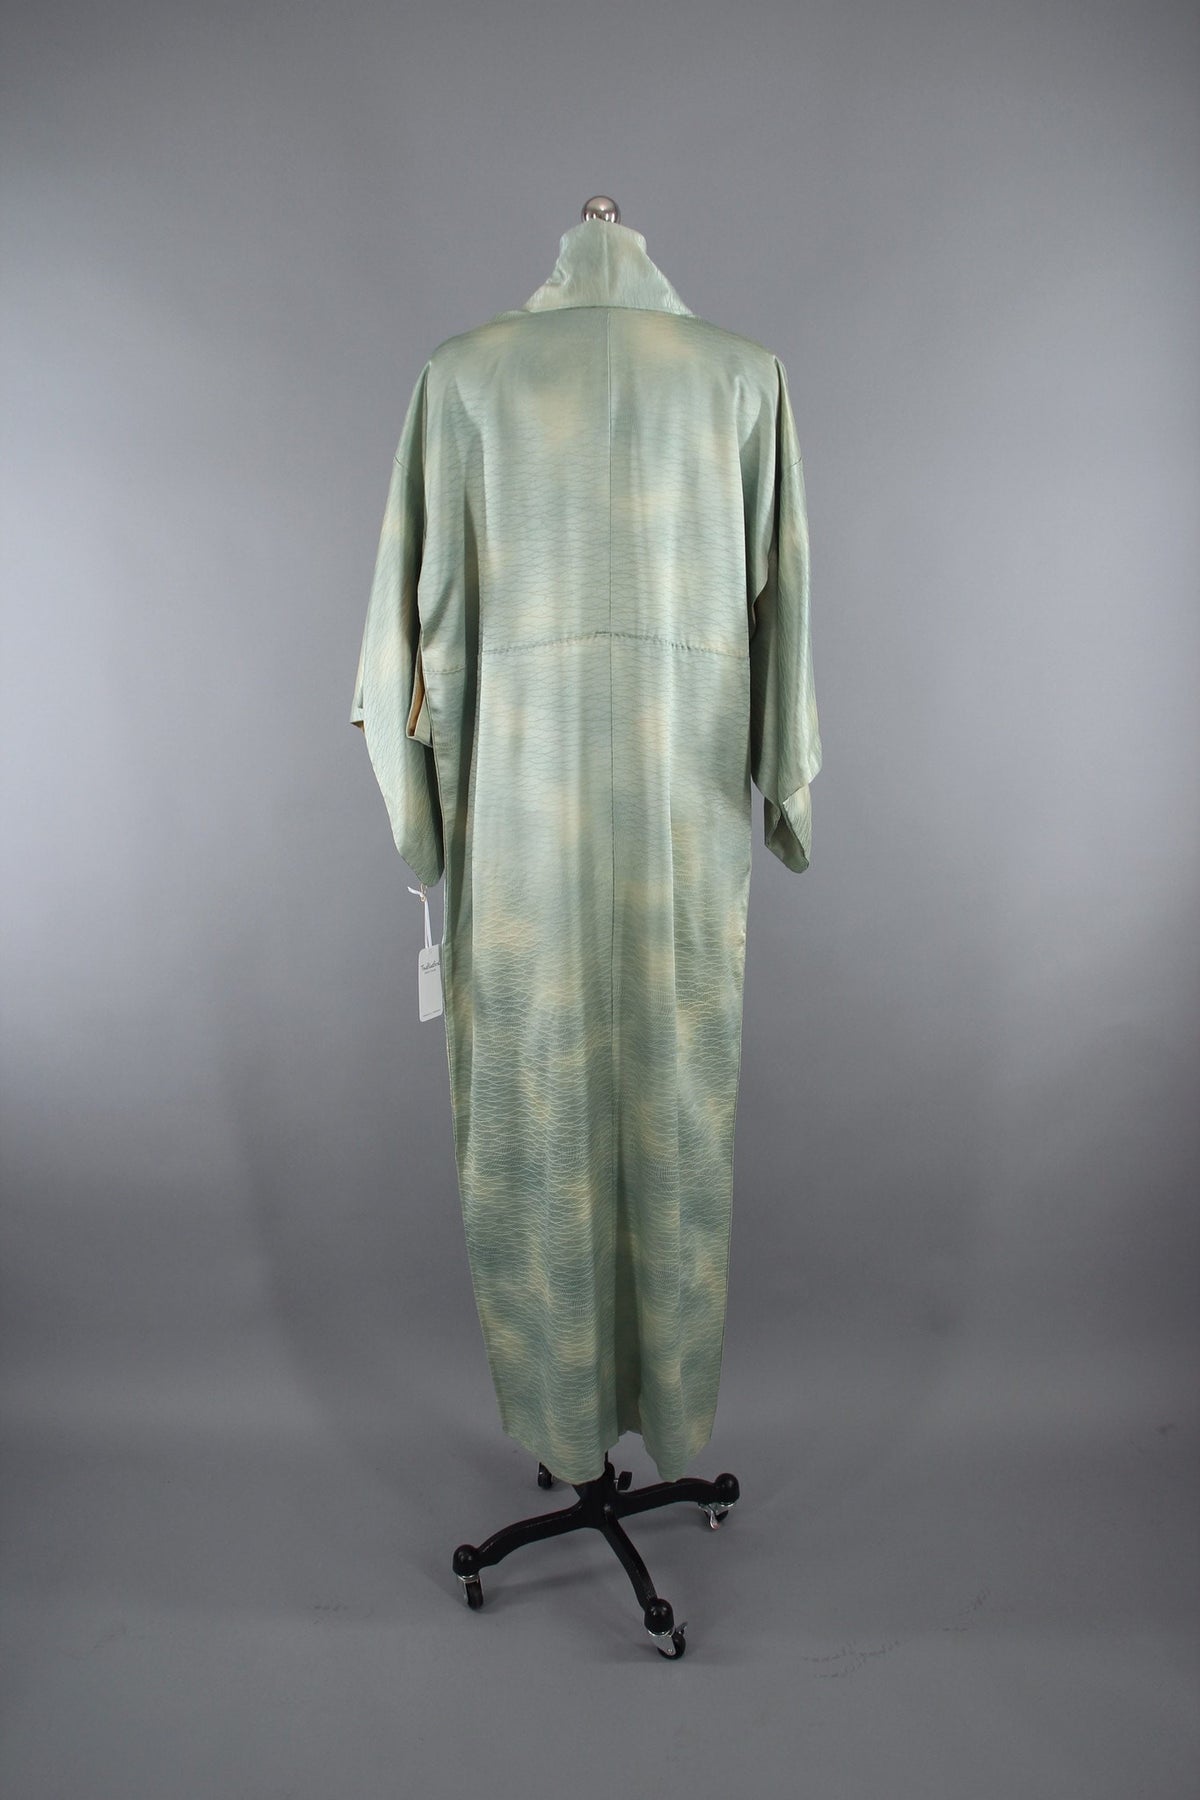 1960s Vintage Silk Kimono Robe in Sea Foam Green Ombre Satin – ThisBlueBird